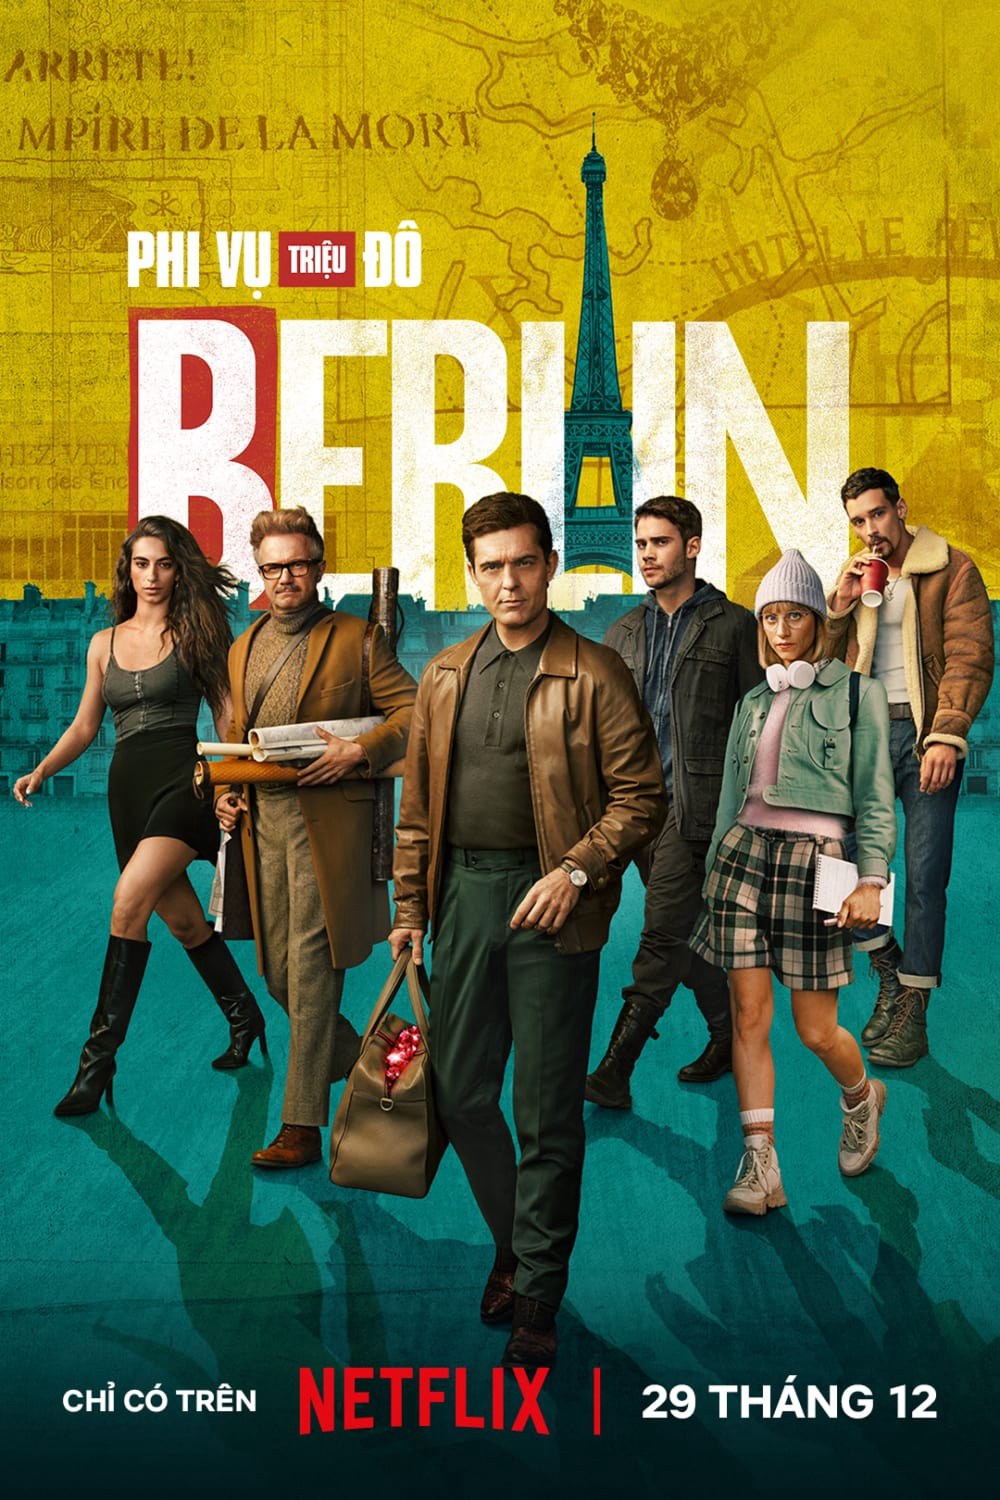 Poster Phim Phi Vụ Triệu Đô: Berlin (Berlin)